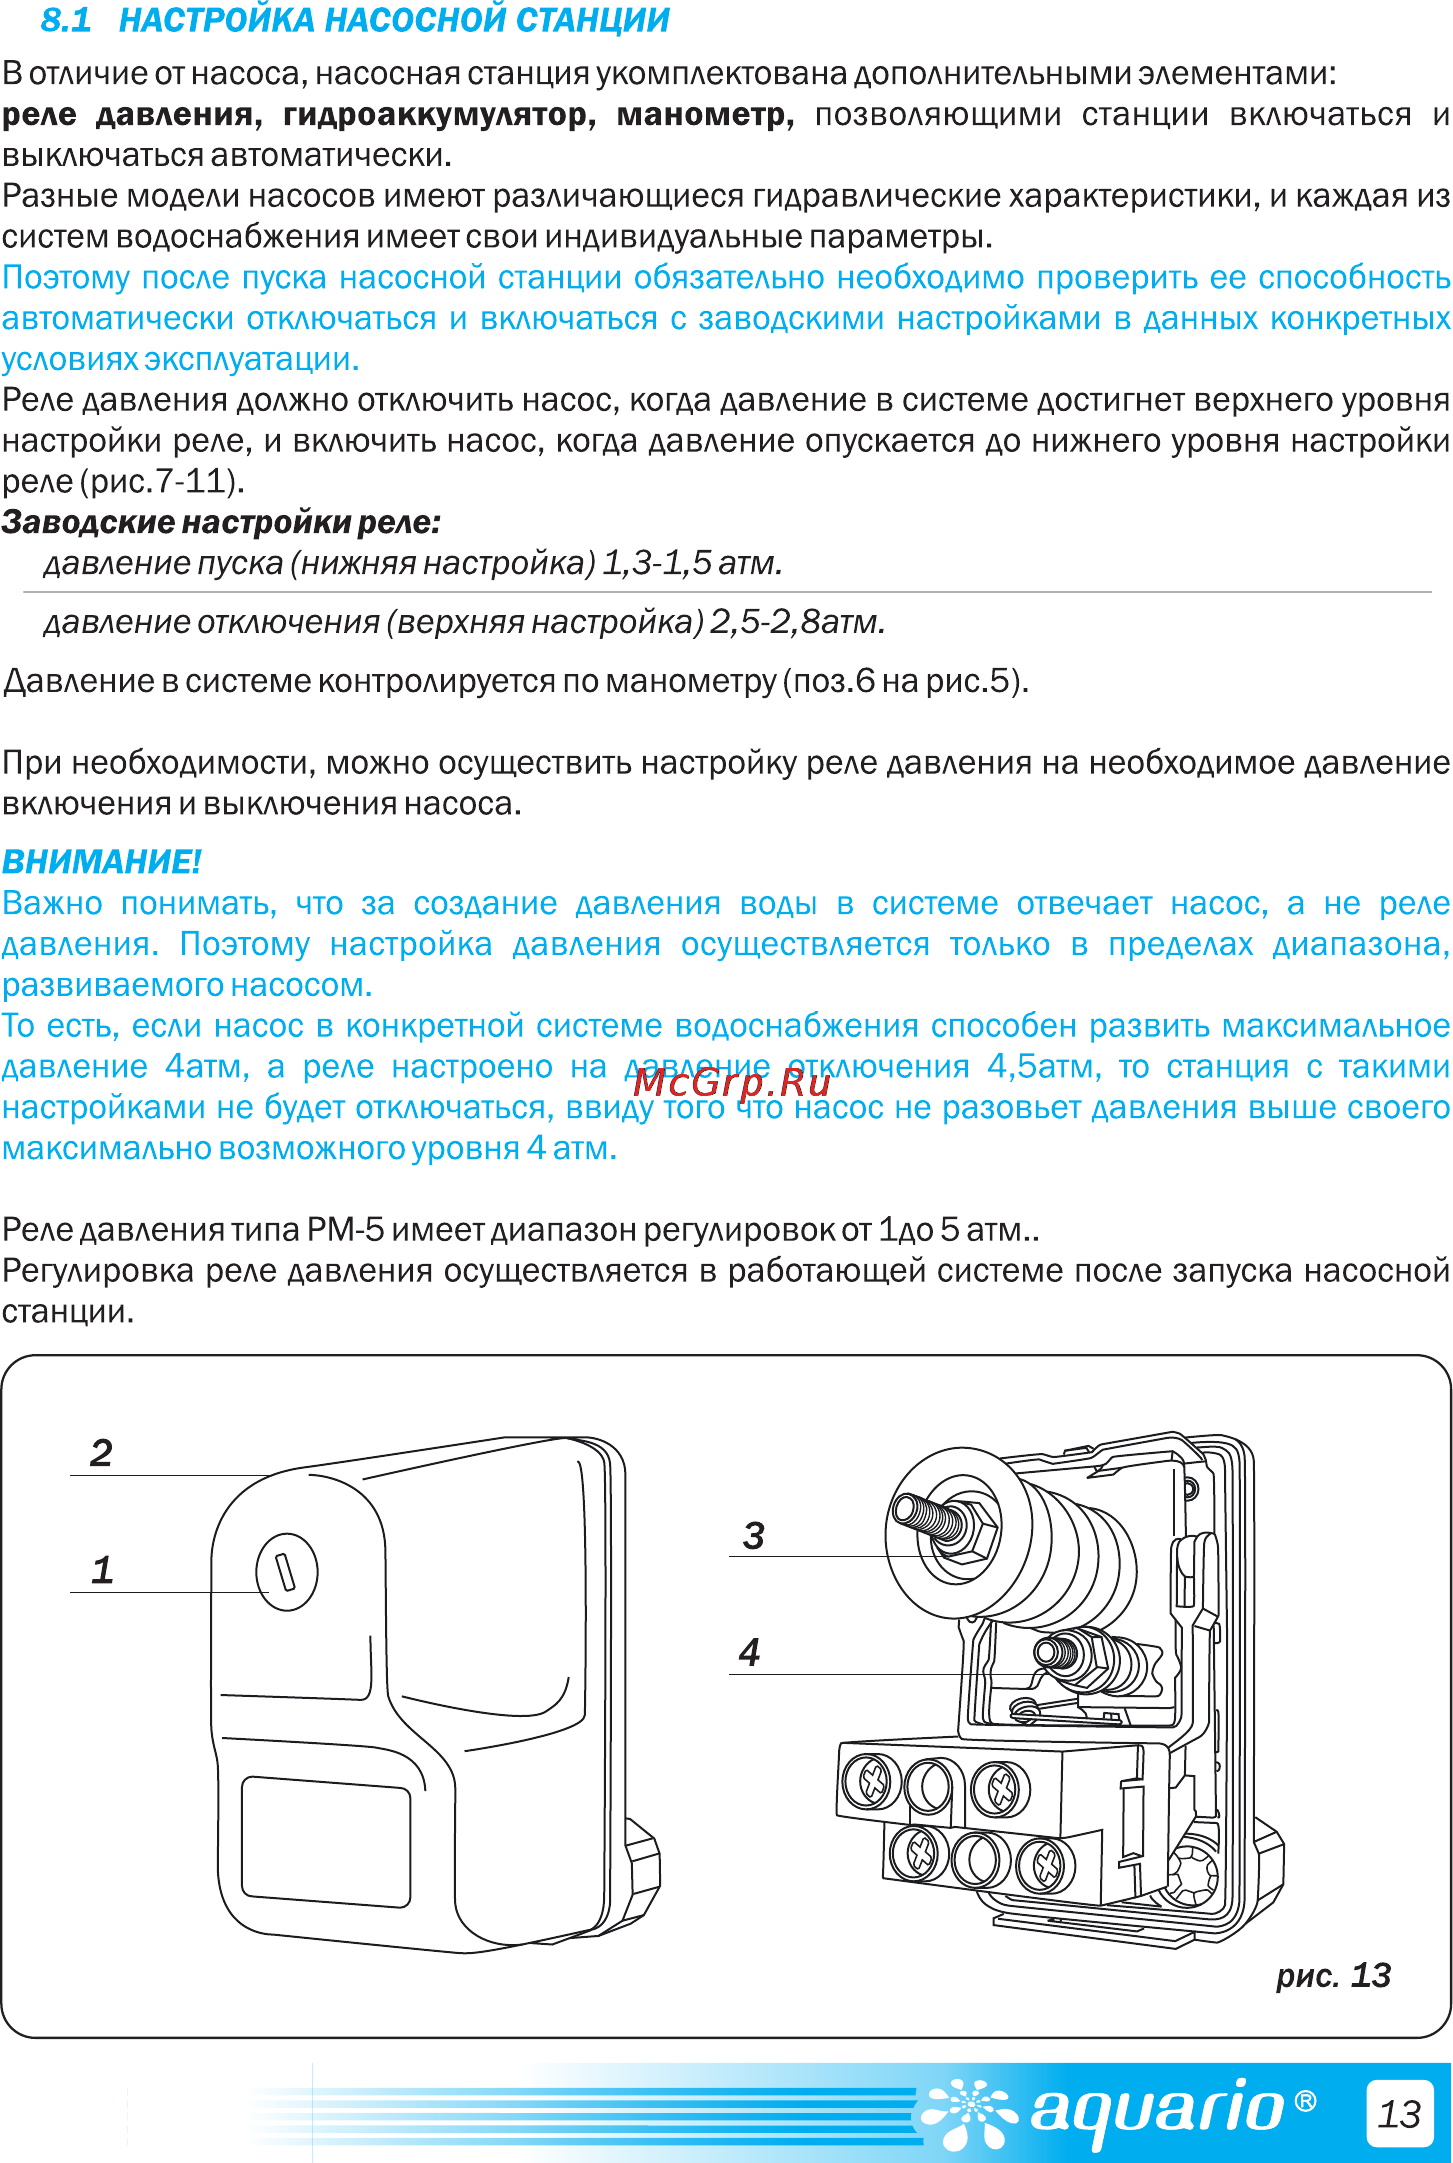 Реле давления джилекс рдм-5 - инструкция по регулировке на vodatyt.ru